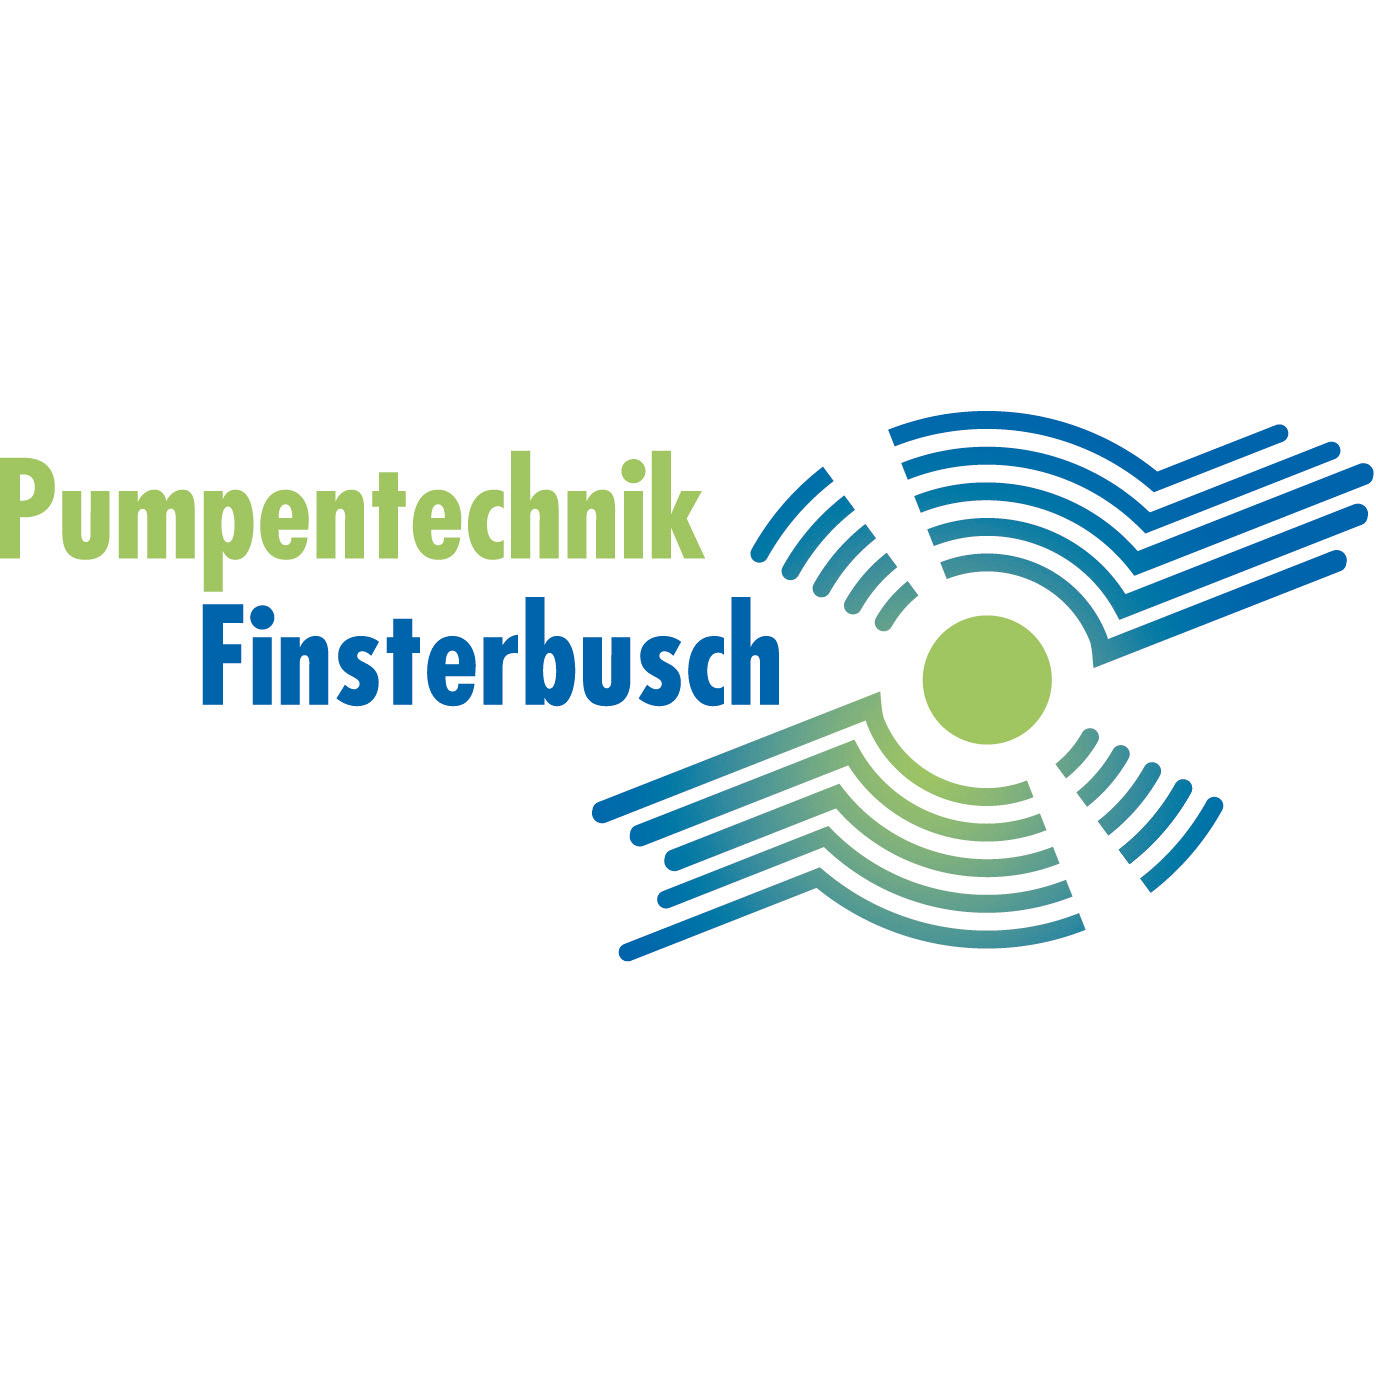 Pumpentechnik Finsterbusch GmbH in Krostitz - Logo